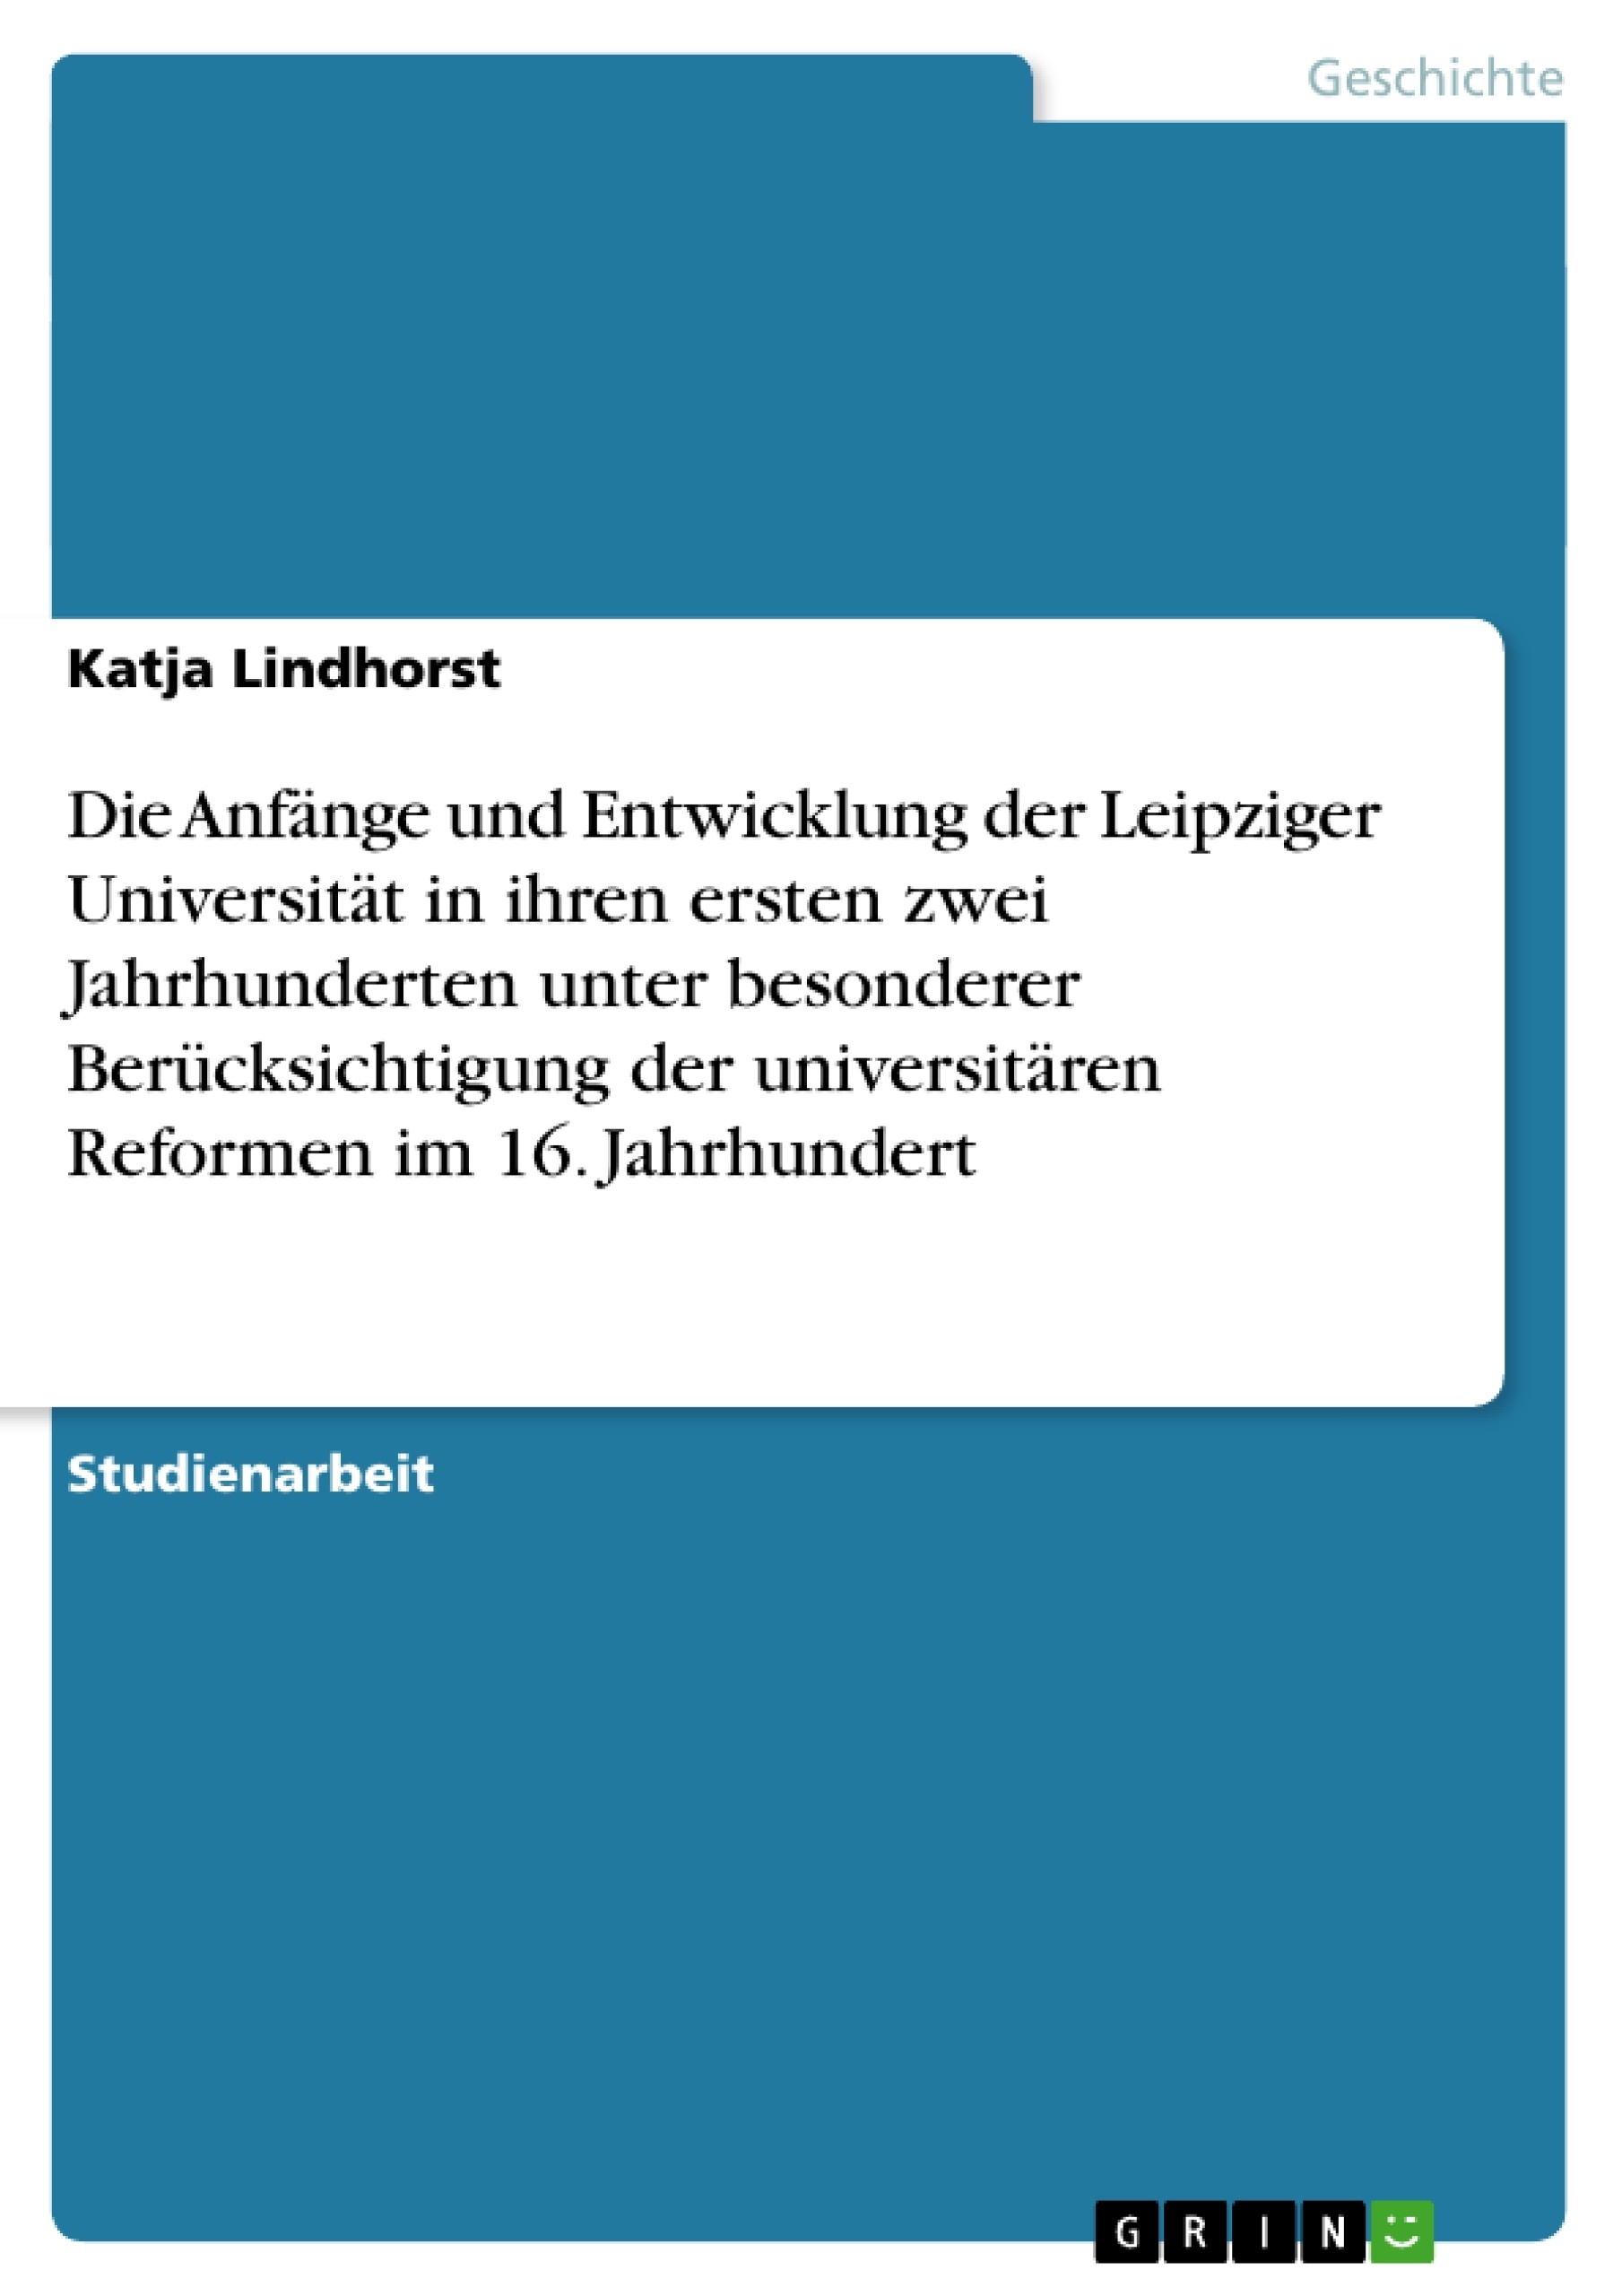 Titre: Die Anfänge und Entwicklung der Leipziger Universität in ihren ersten zwei Jahrhunderten unter besonderer Berücksichtigung der universitären Reformen im 16. Jahrhundert